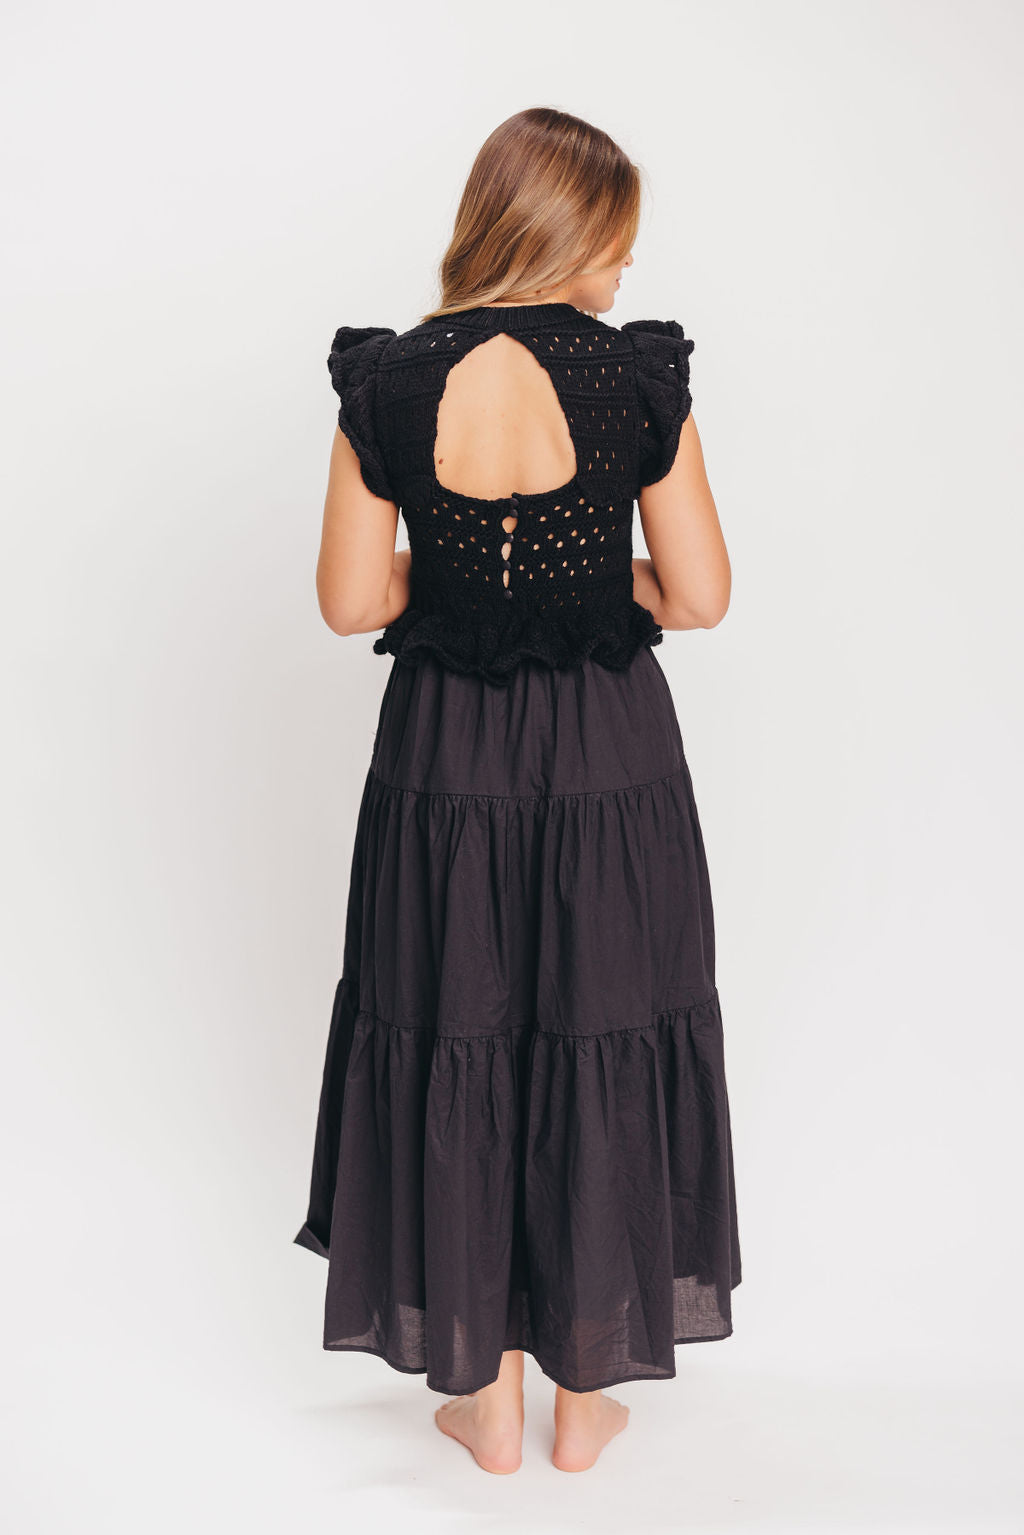 Laura Combination Midi Dress in Black